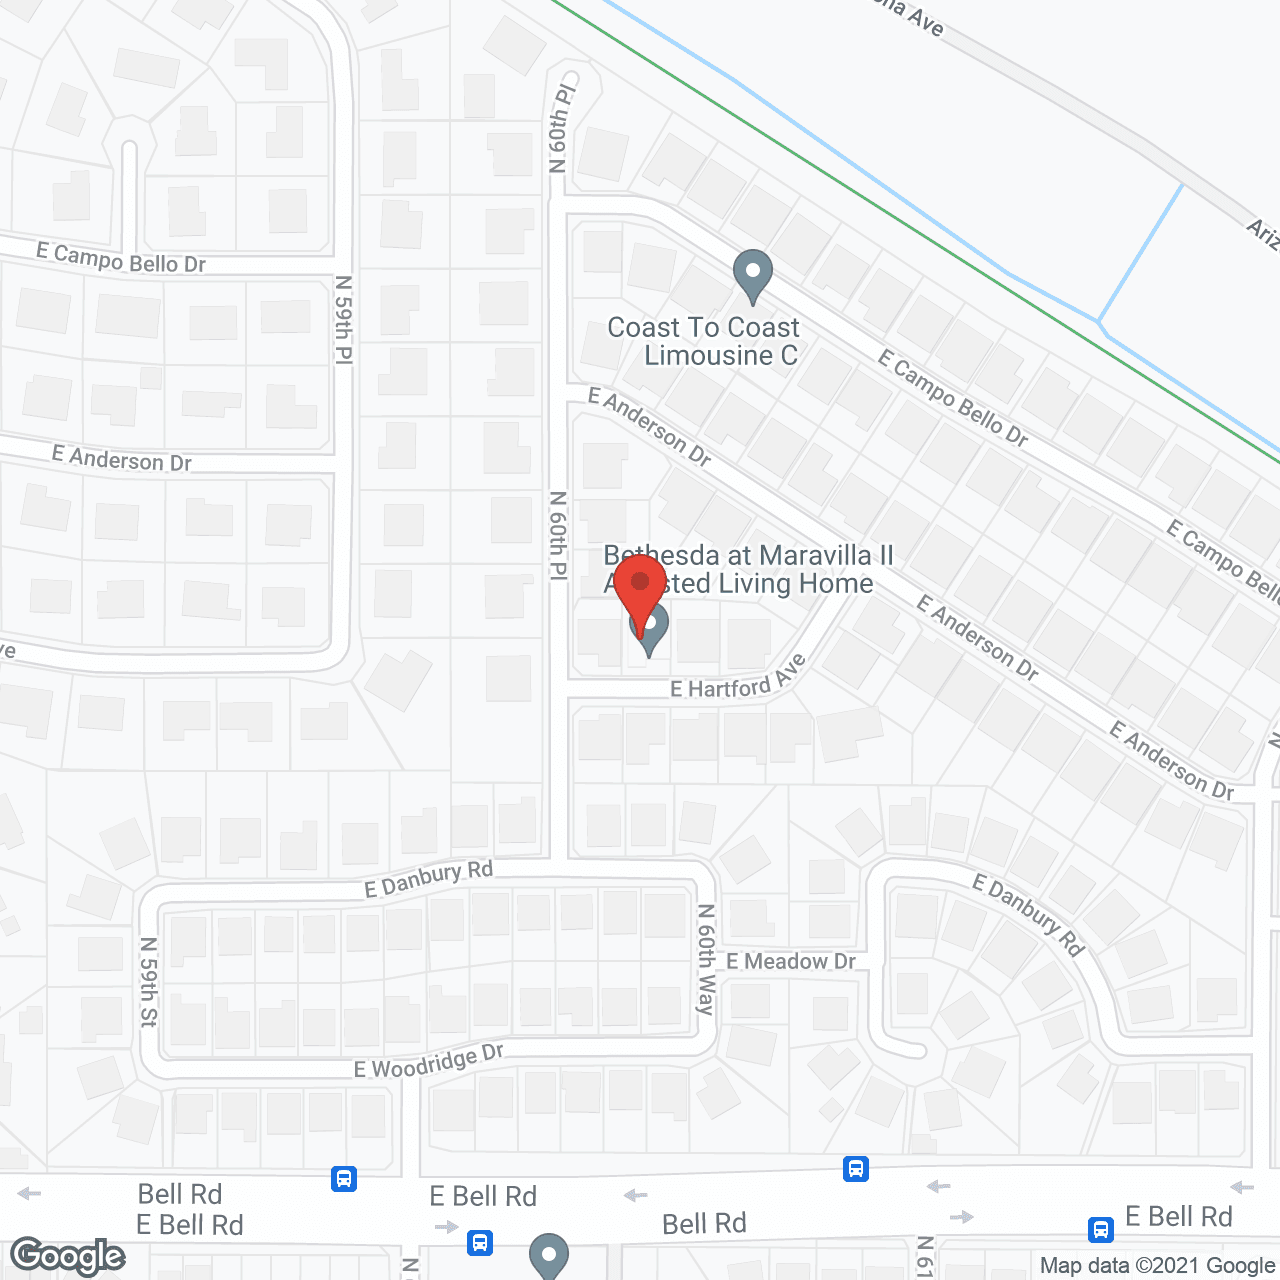 Bethesda at Maravilla in google map